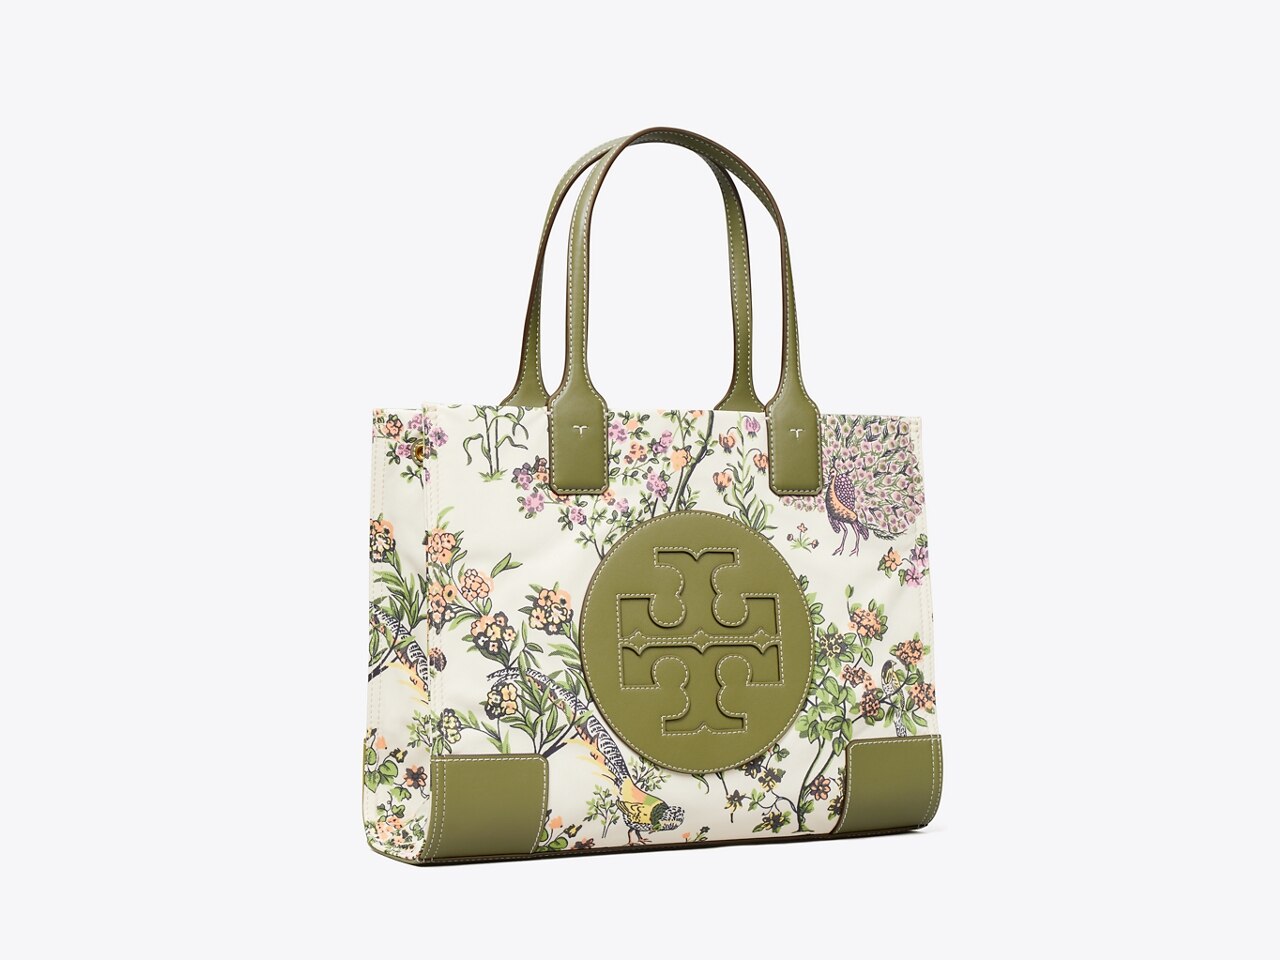 Tory Burch Ella floral Tote Bag Handbag, Women's Fashion, Bags